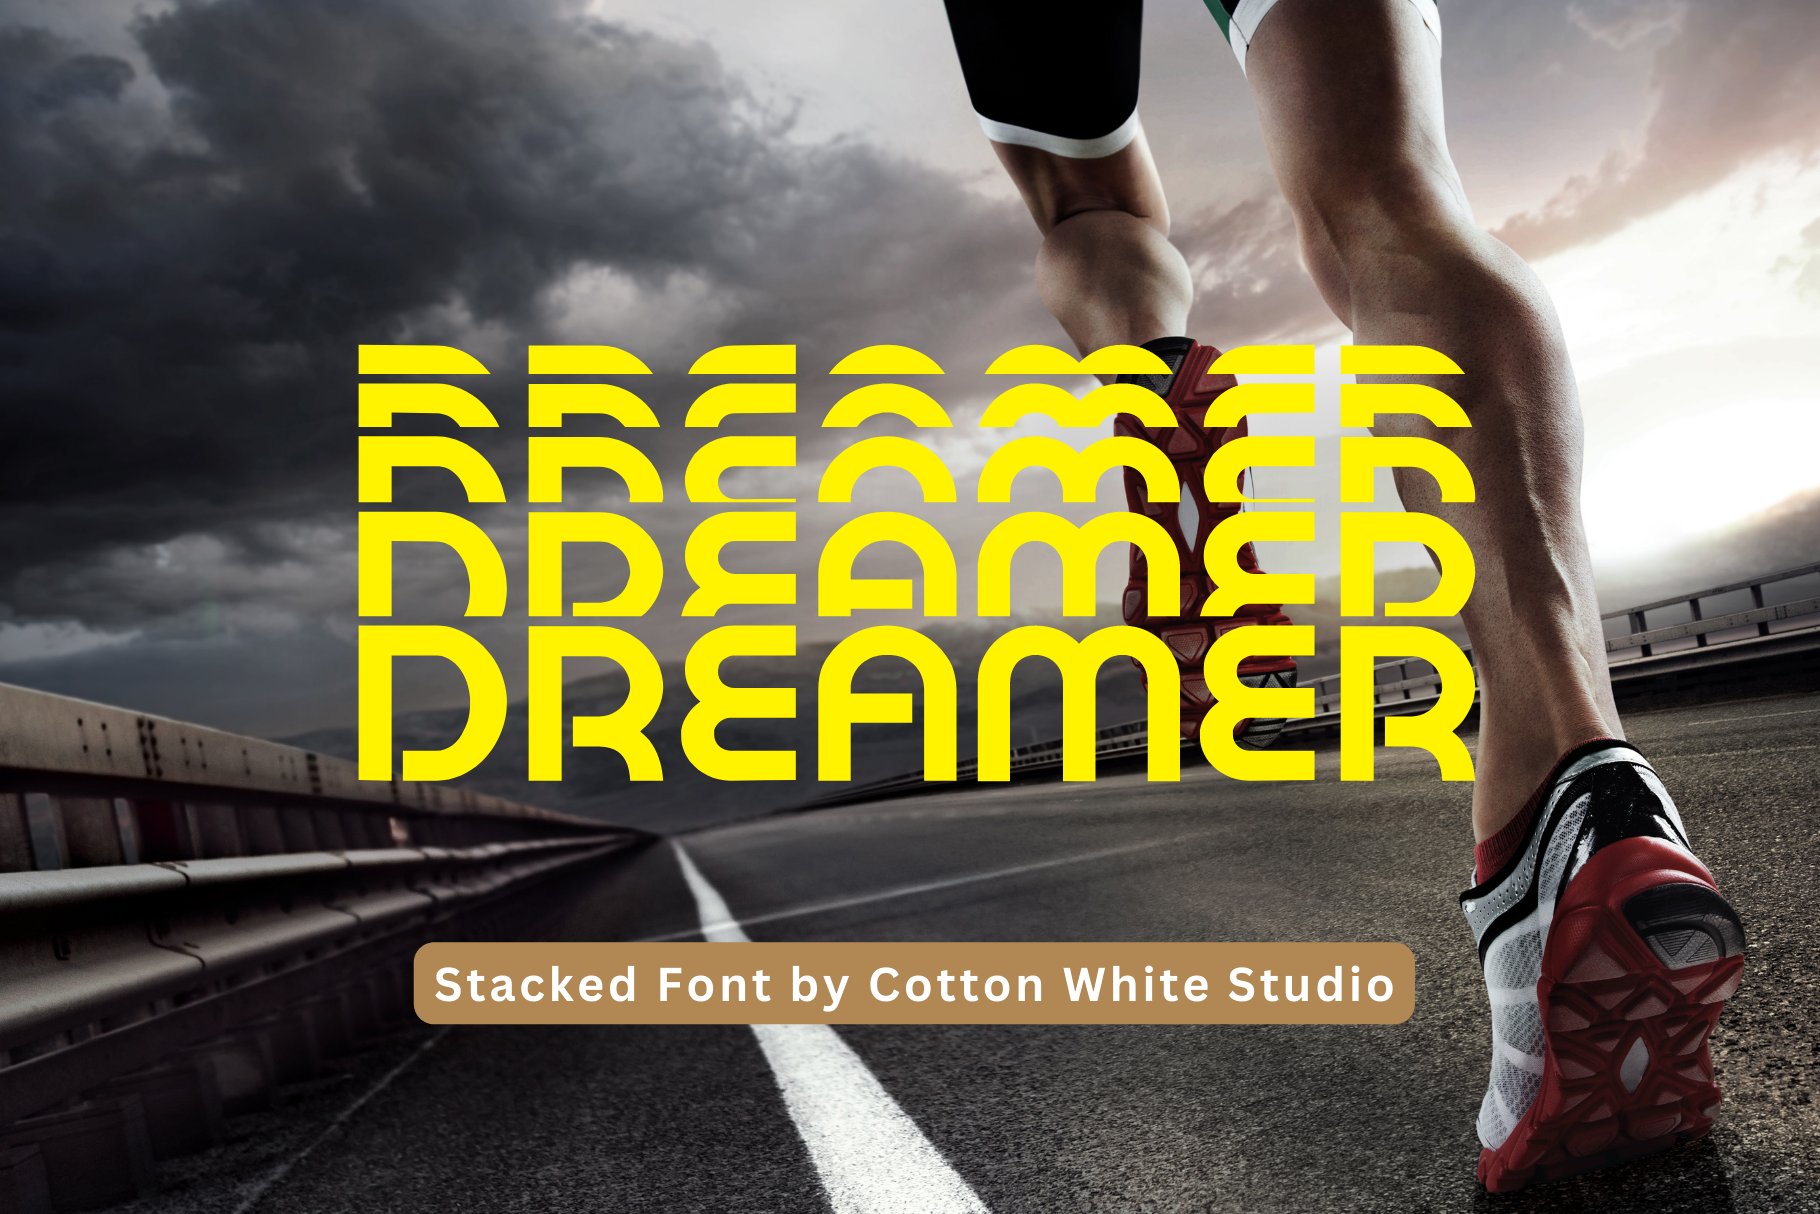 Dreamer cover image.